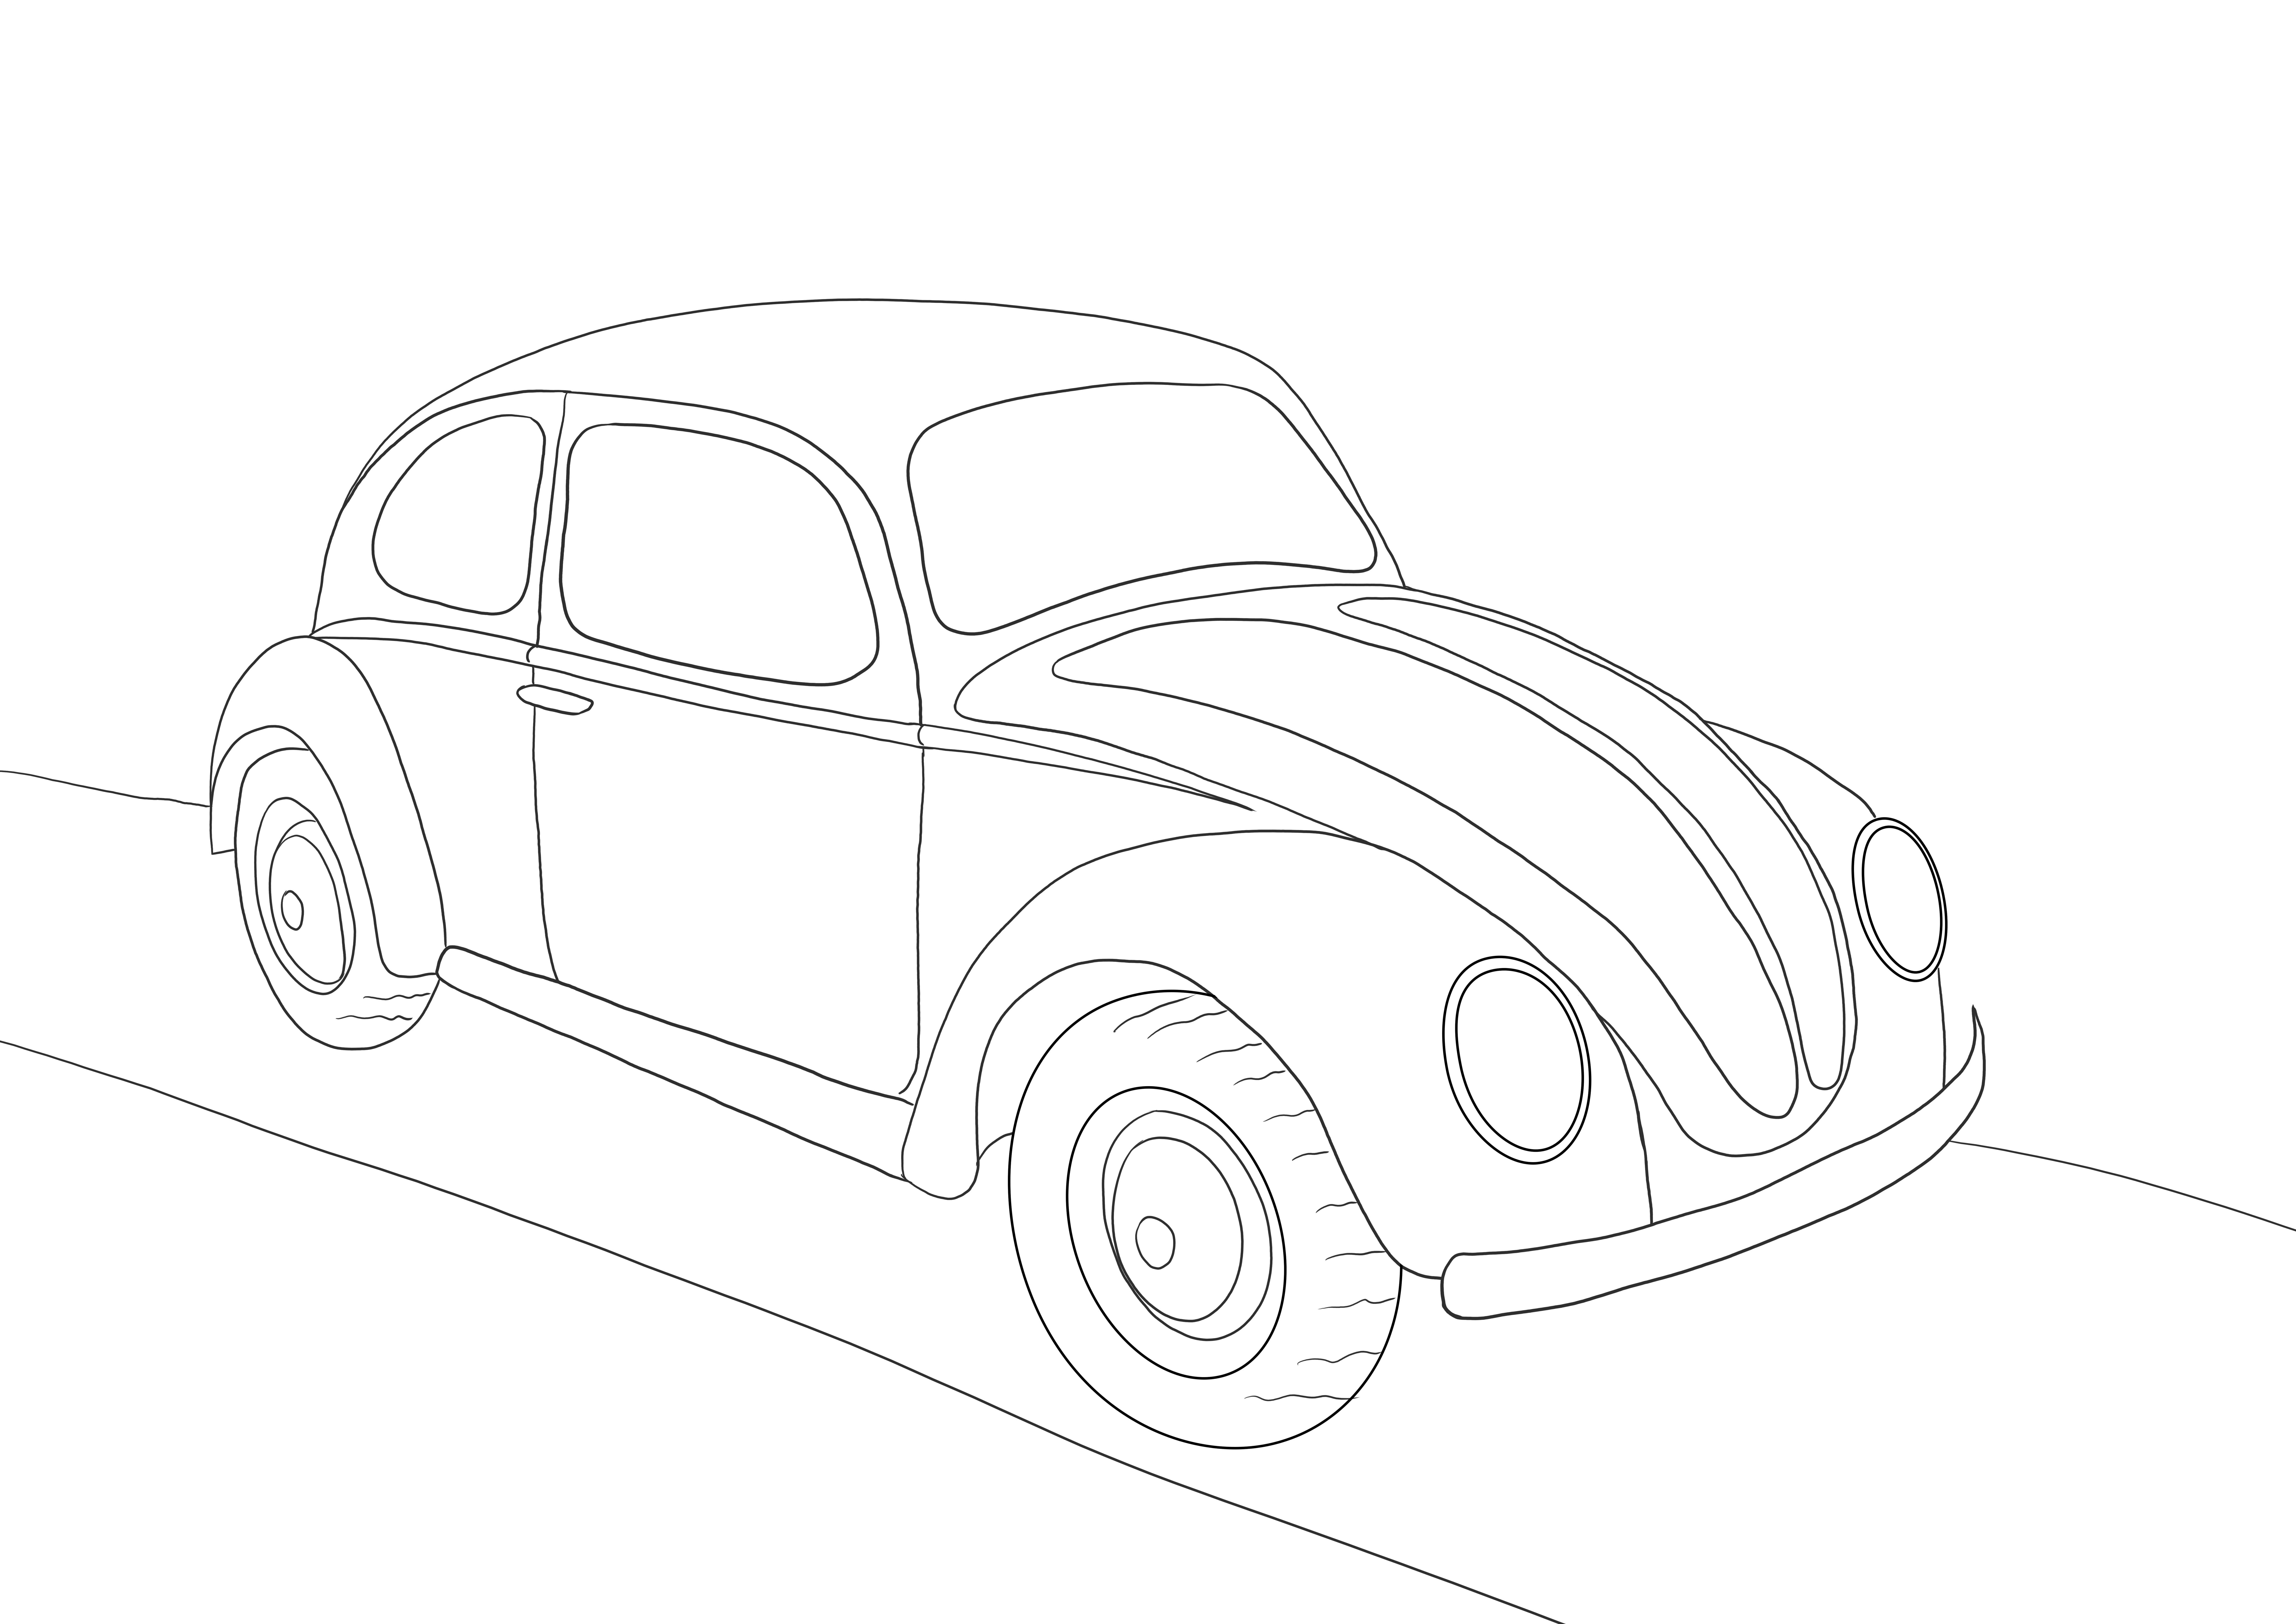 Volkswagen Beetle do bezpłatnego wydruku do kolorowania lub zapisywania do późniejszego zdjęcia